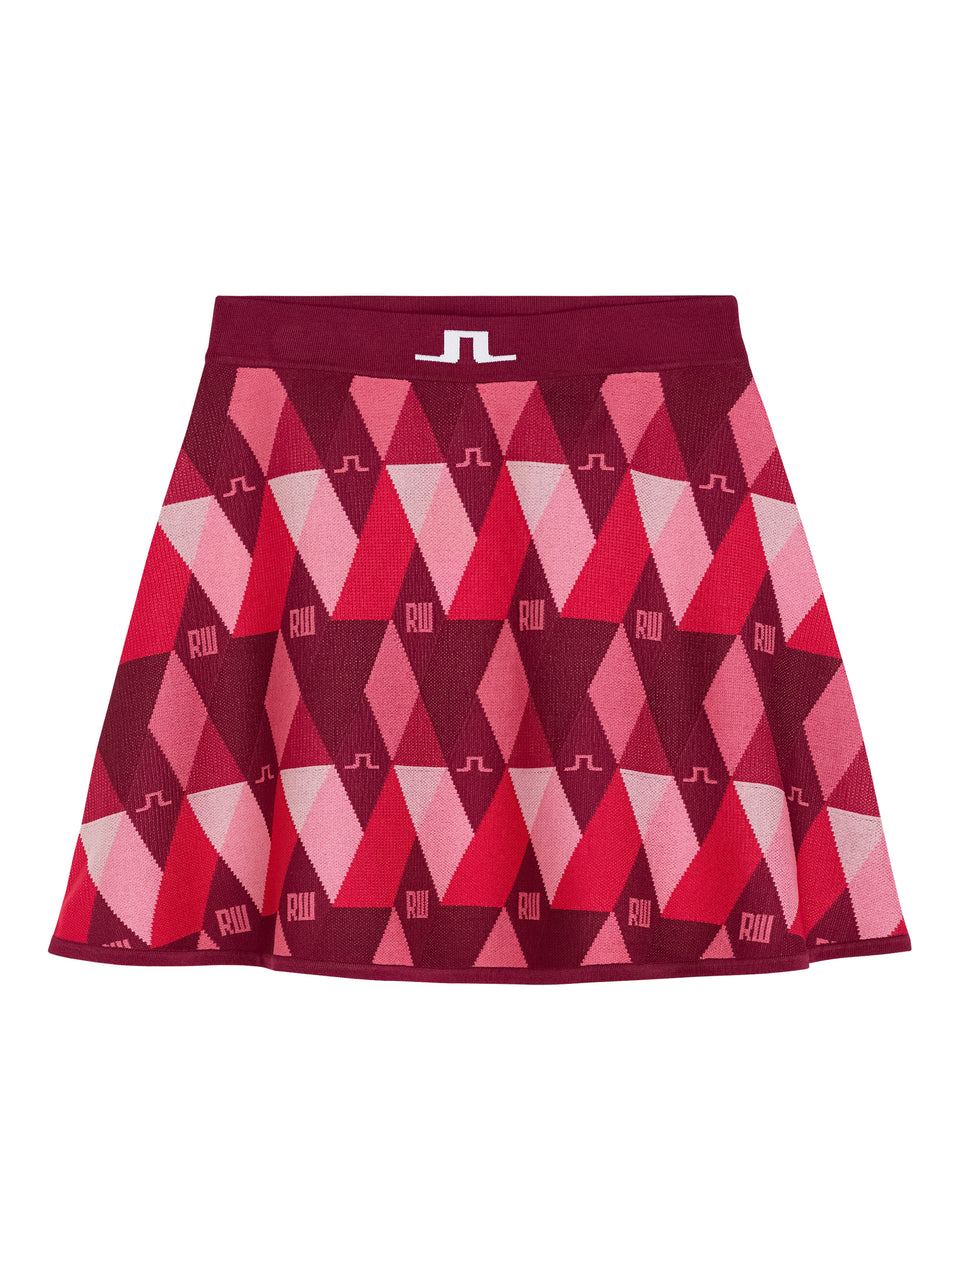 Ellen Argyle Knitted Skirt / RW Pink Argyle